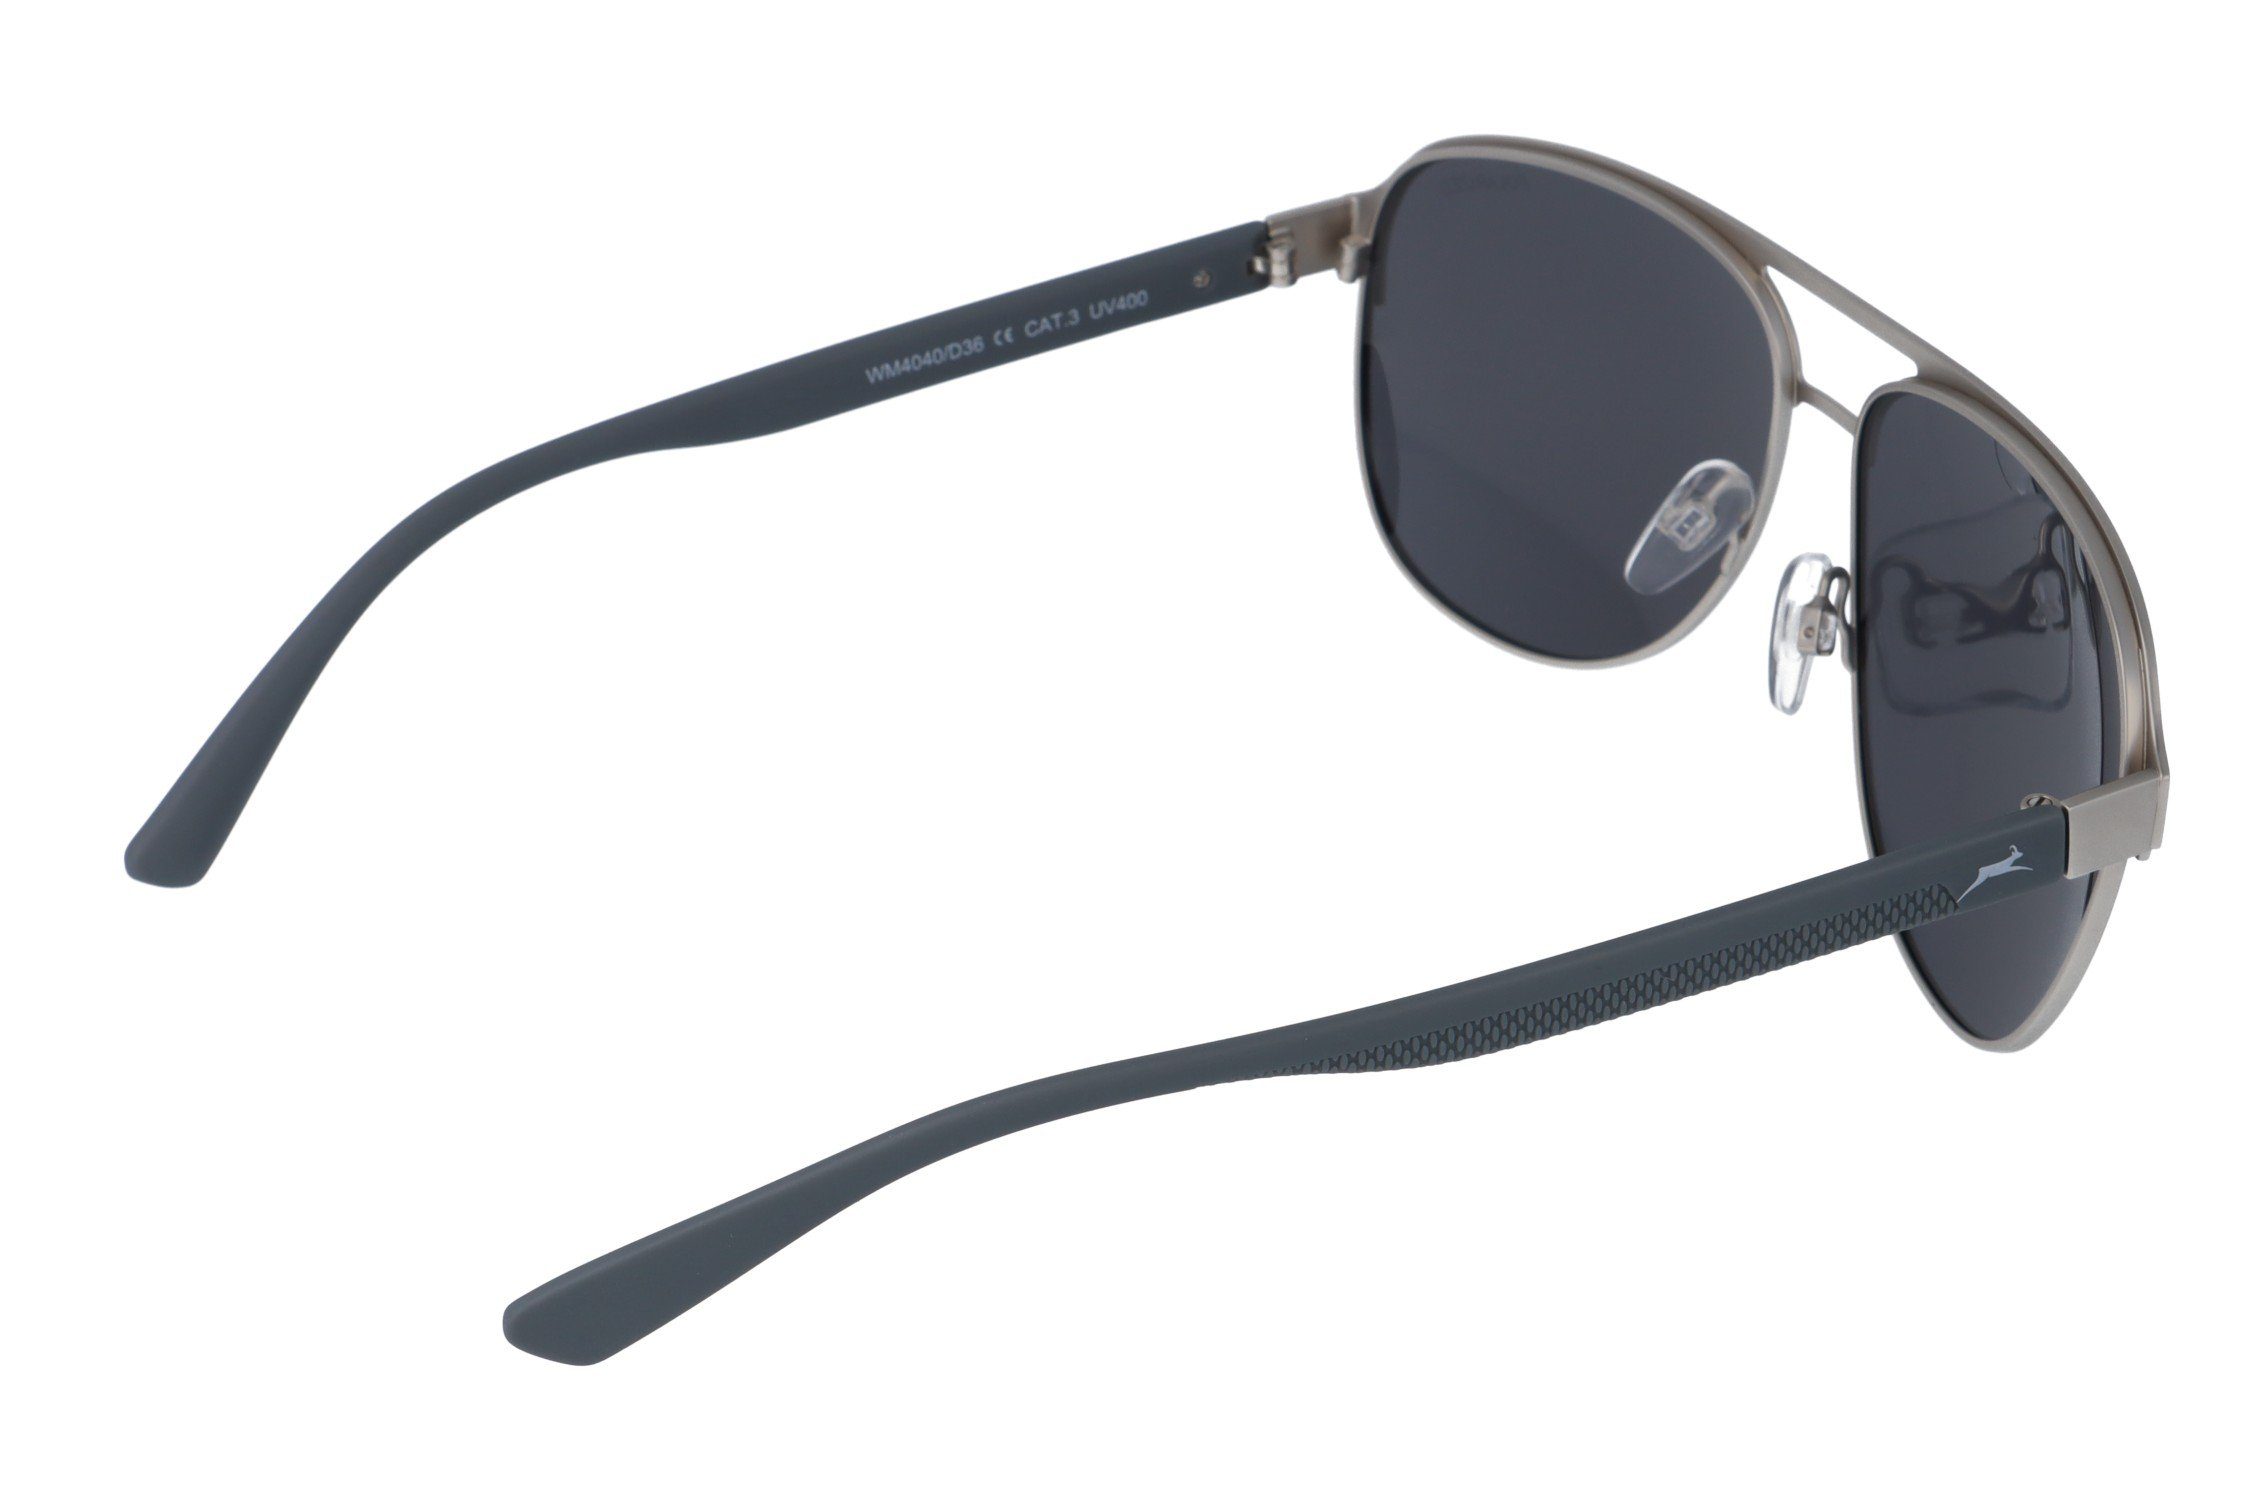 Pilotenbrille Brille Gamswild Sonnenbrille WM4040 silber Mode Vollmetallrahmen GAMSSTYLE Unisex